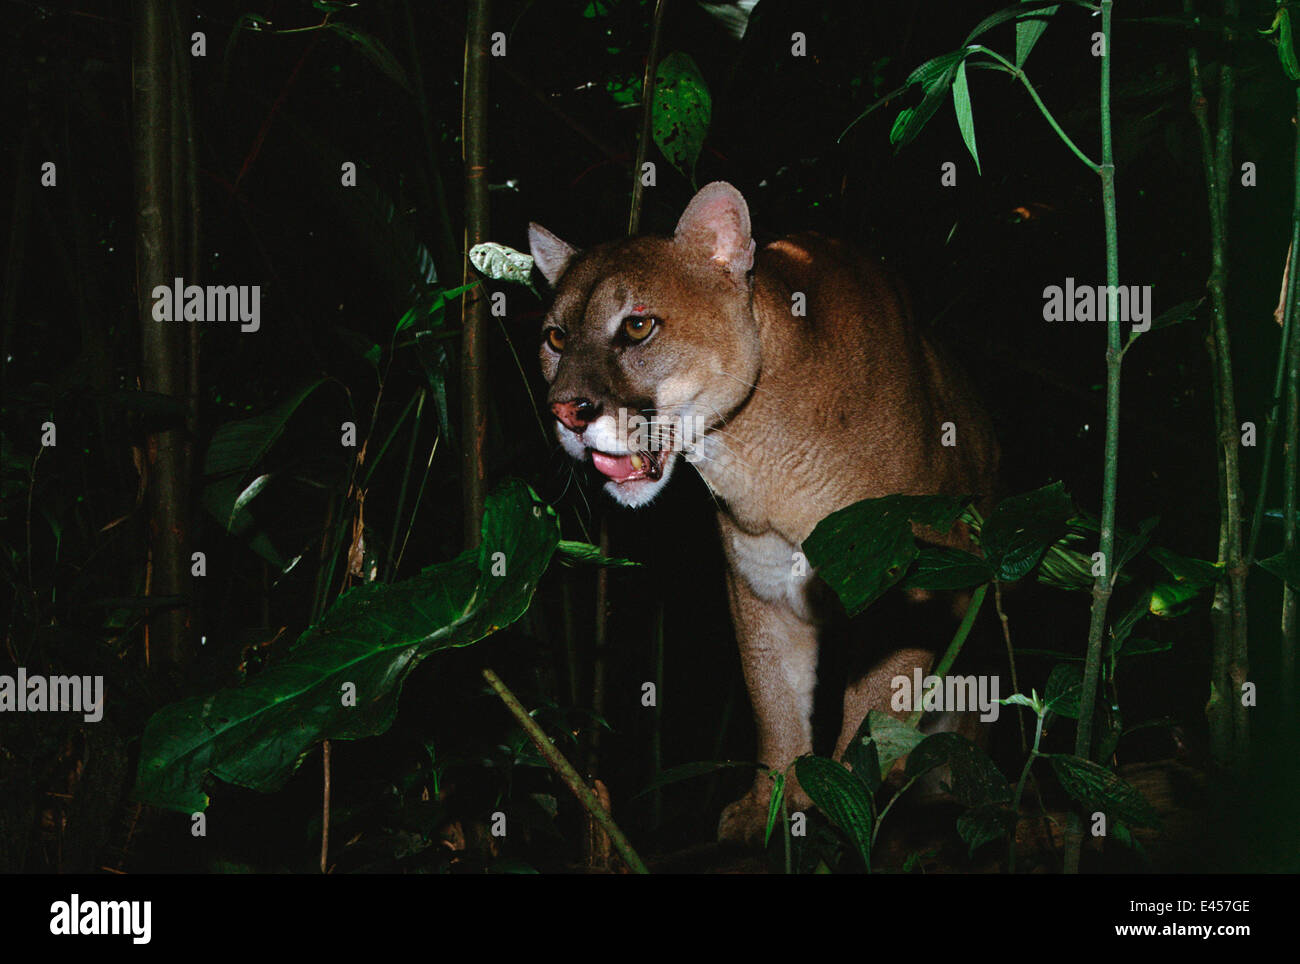 Puma concolor amazon -Fotos und -Bildmaterial in hoher Auflösung – Alamy